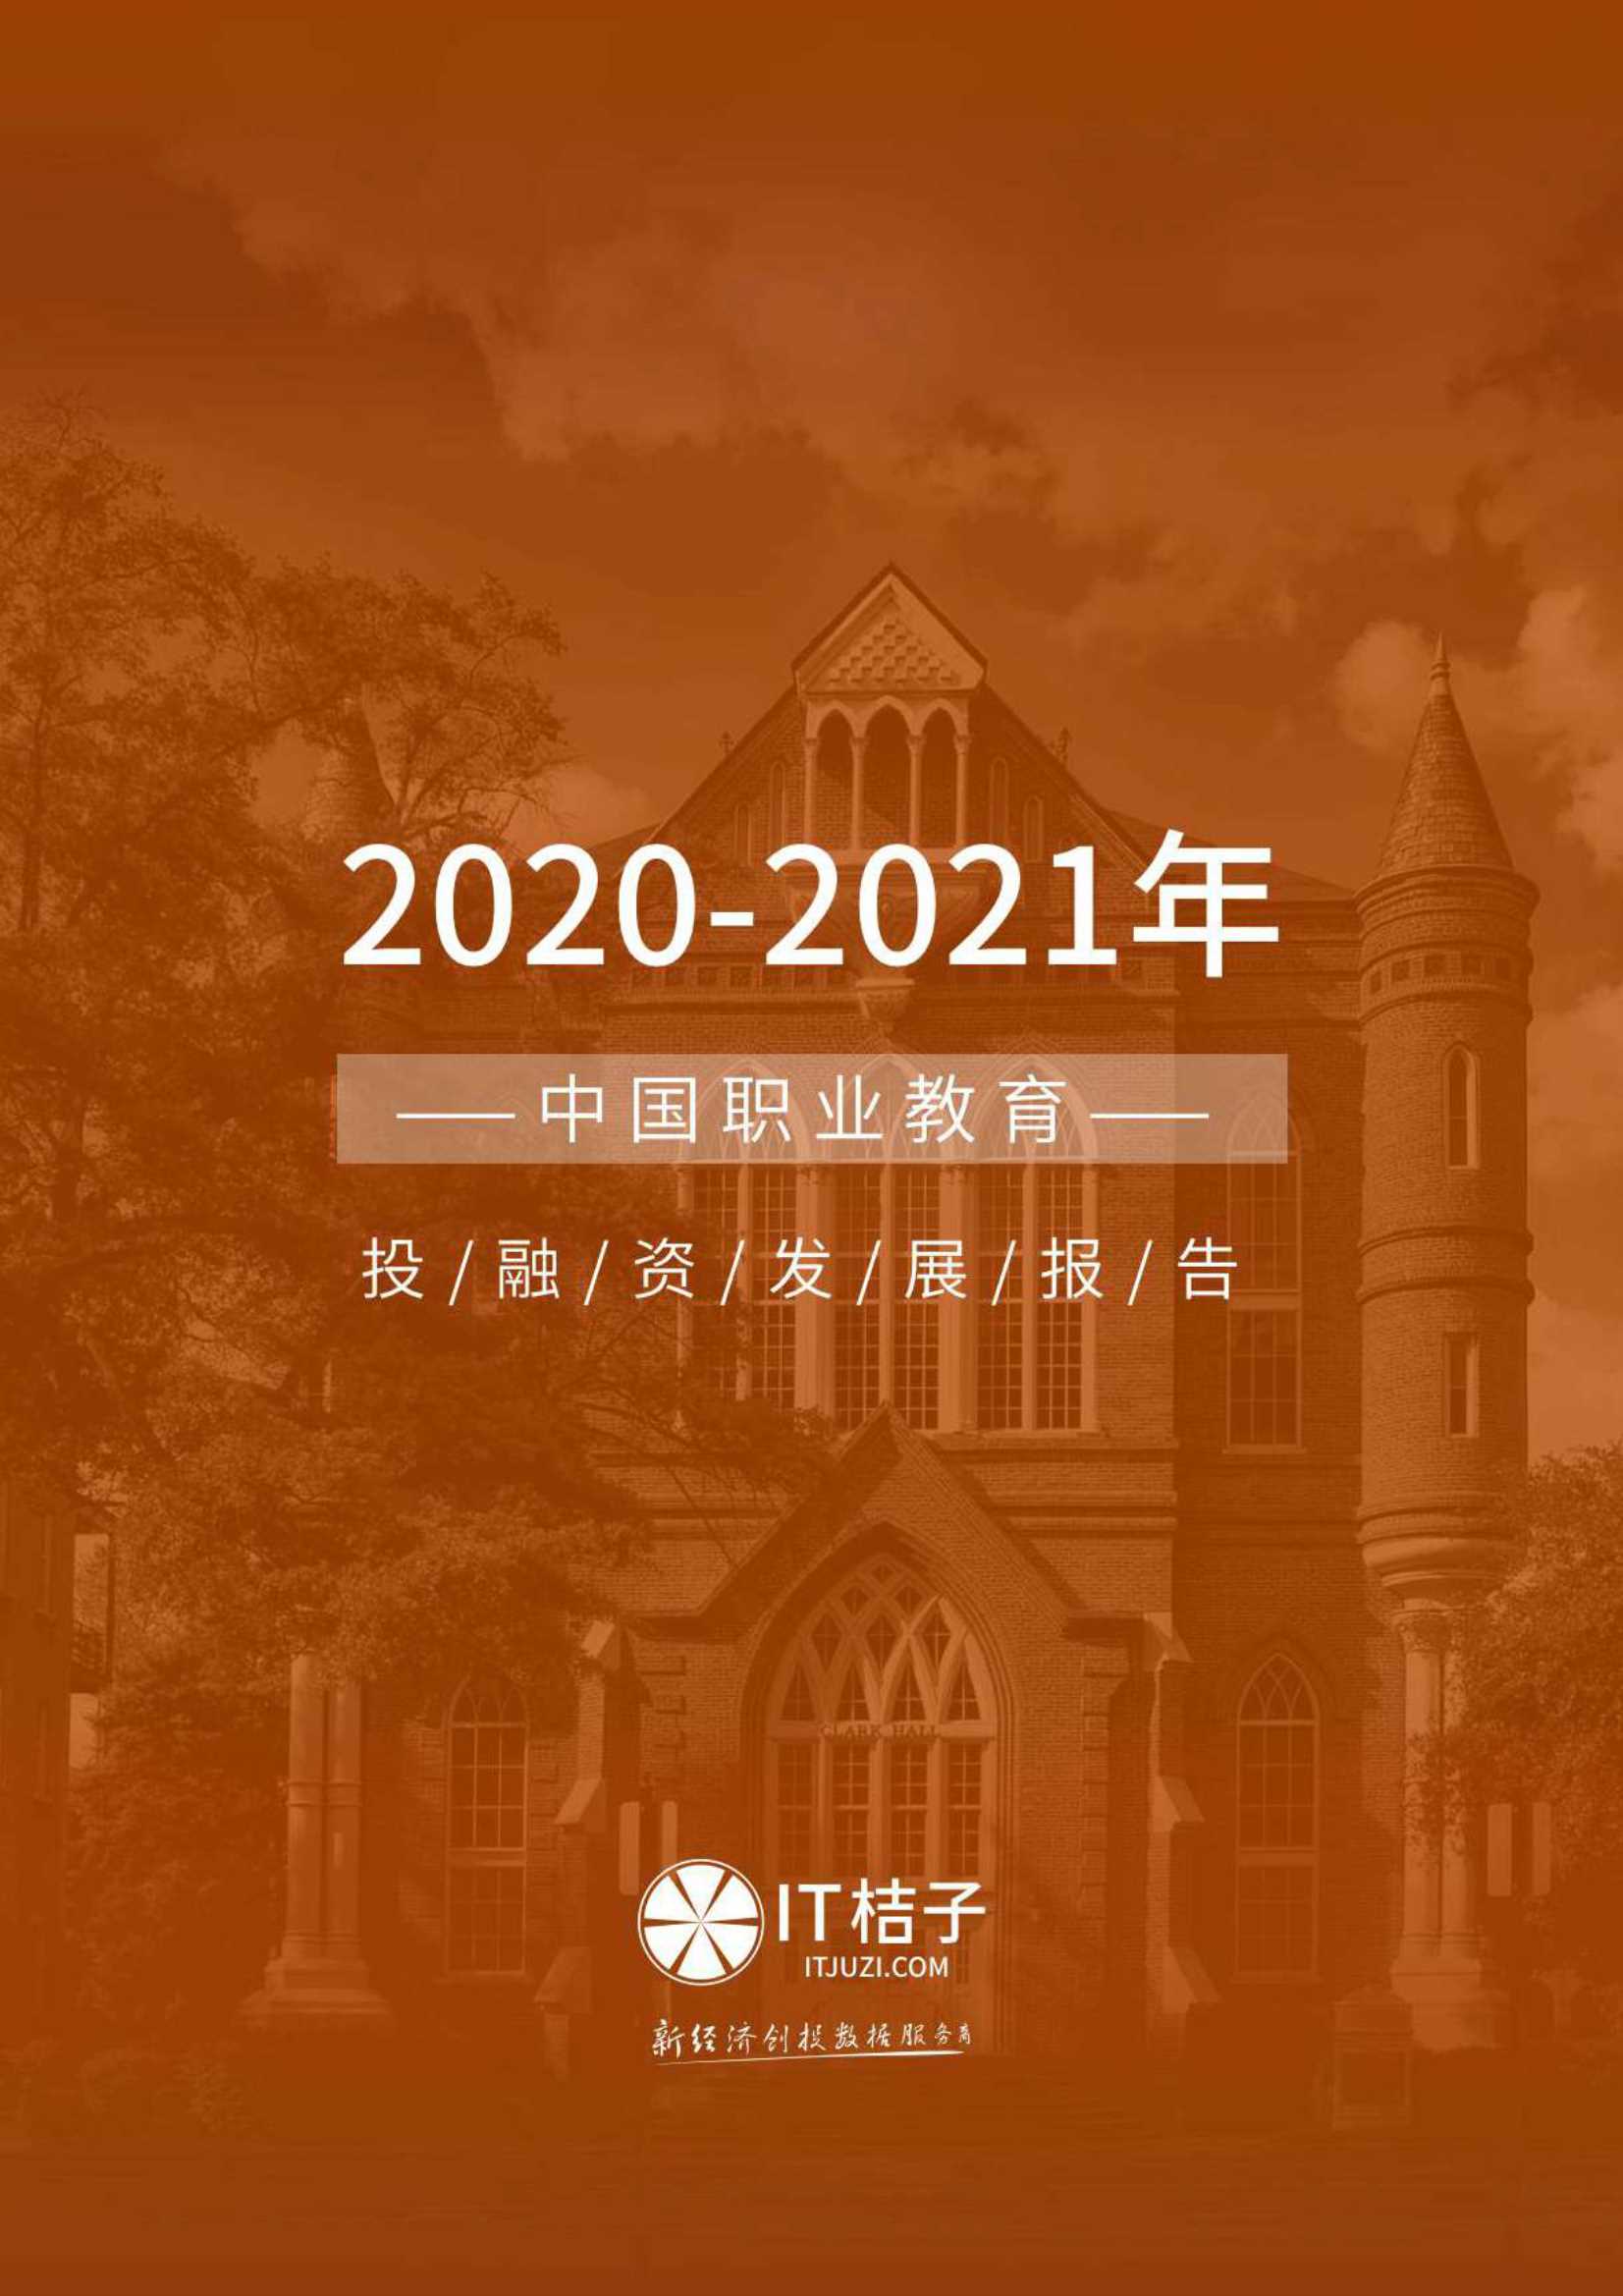 IT桔子-2021年上半年职业教育融资发展报告-2021.06-28页